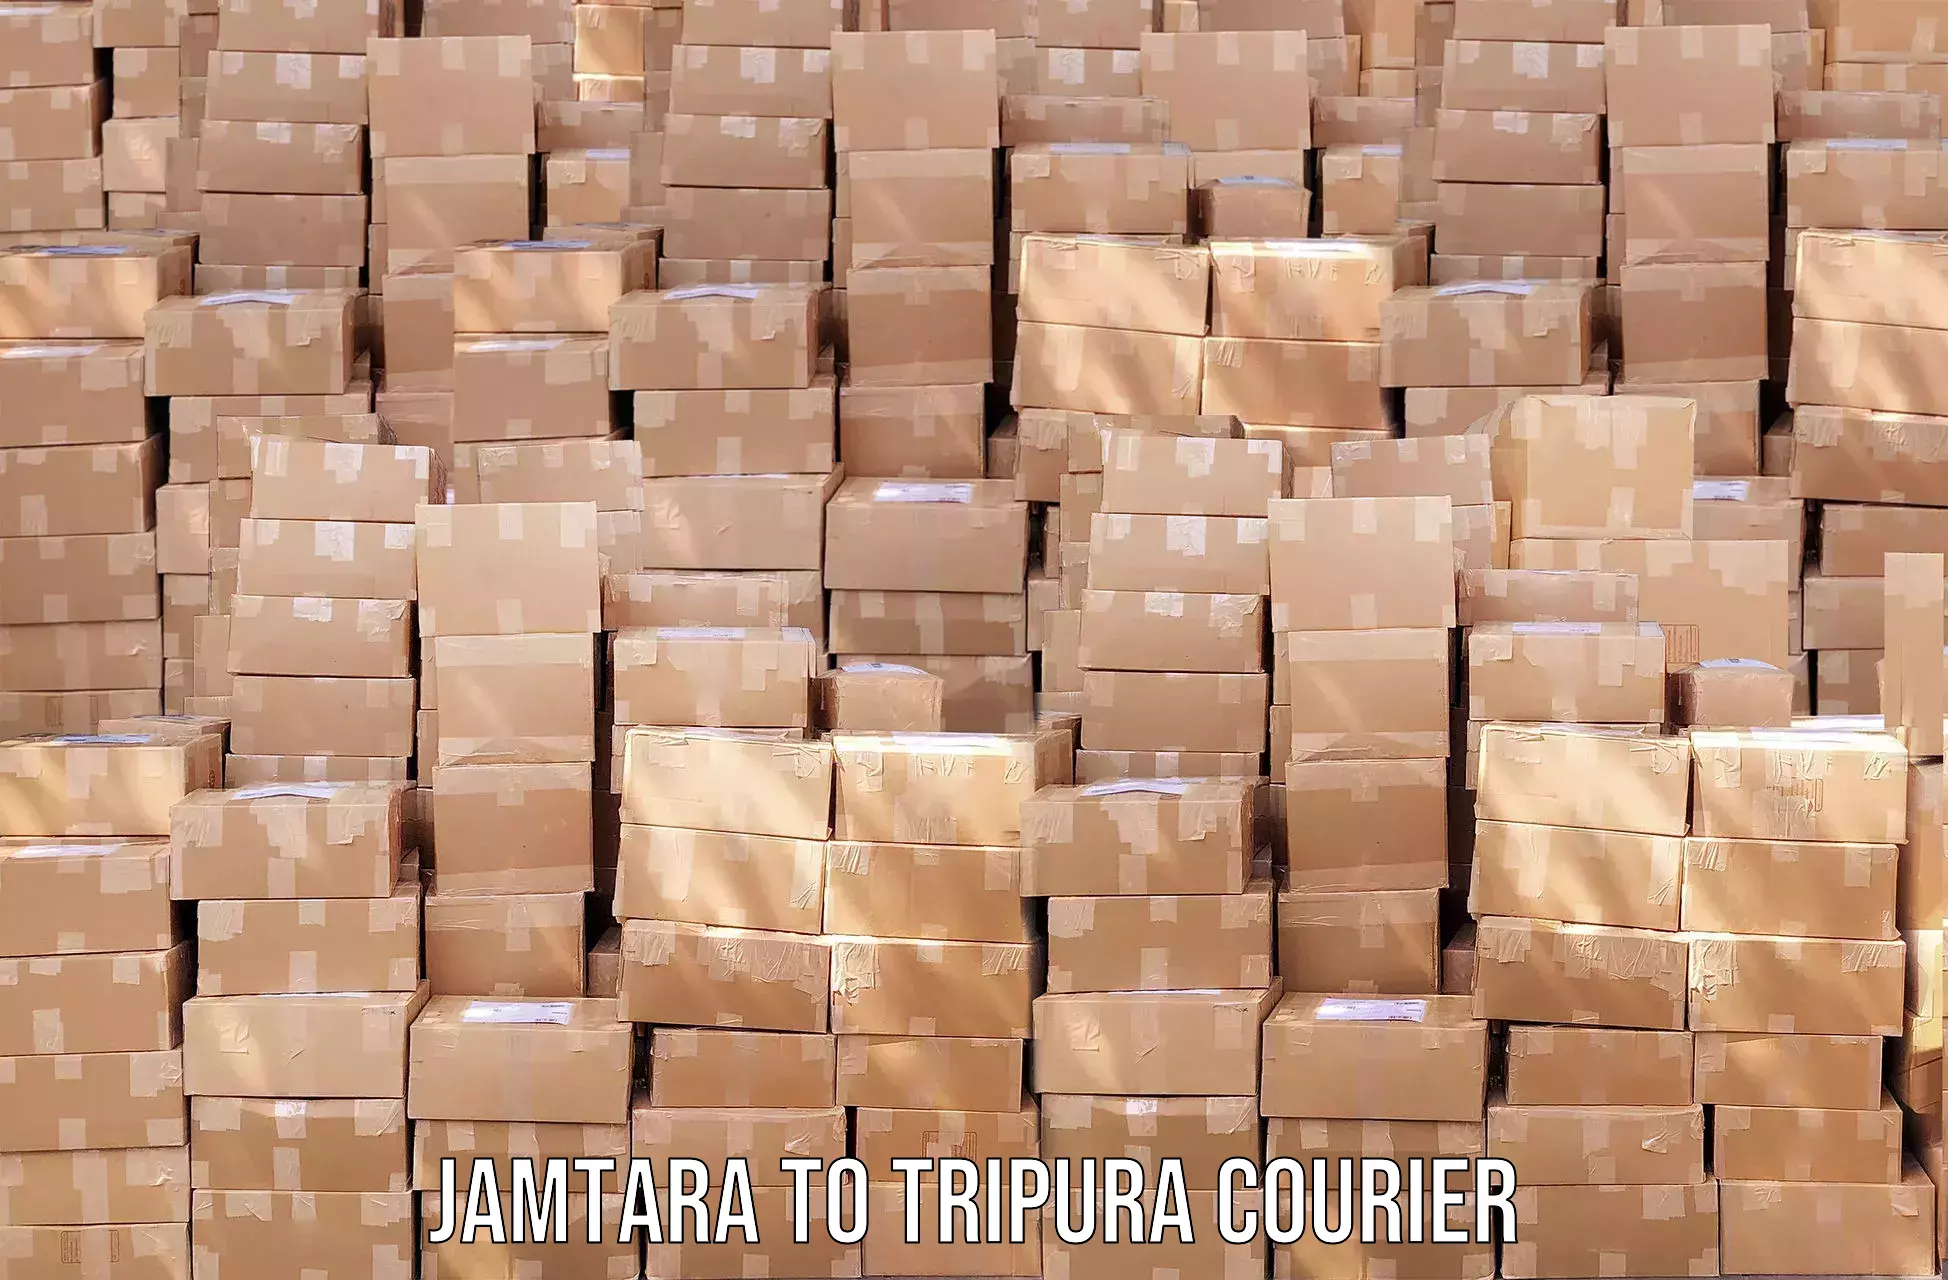 Efficient parcel tracking Jamtara to IIIT Agartala